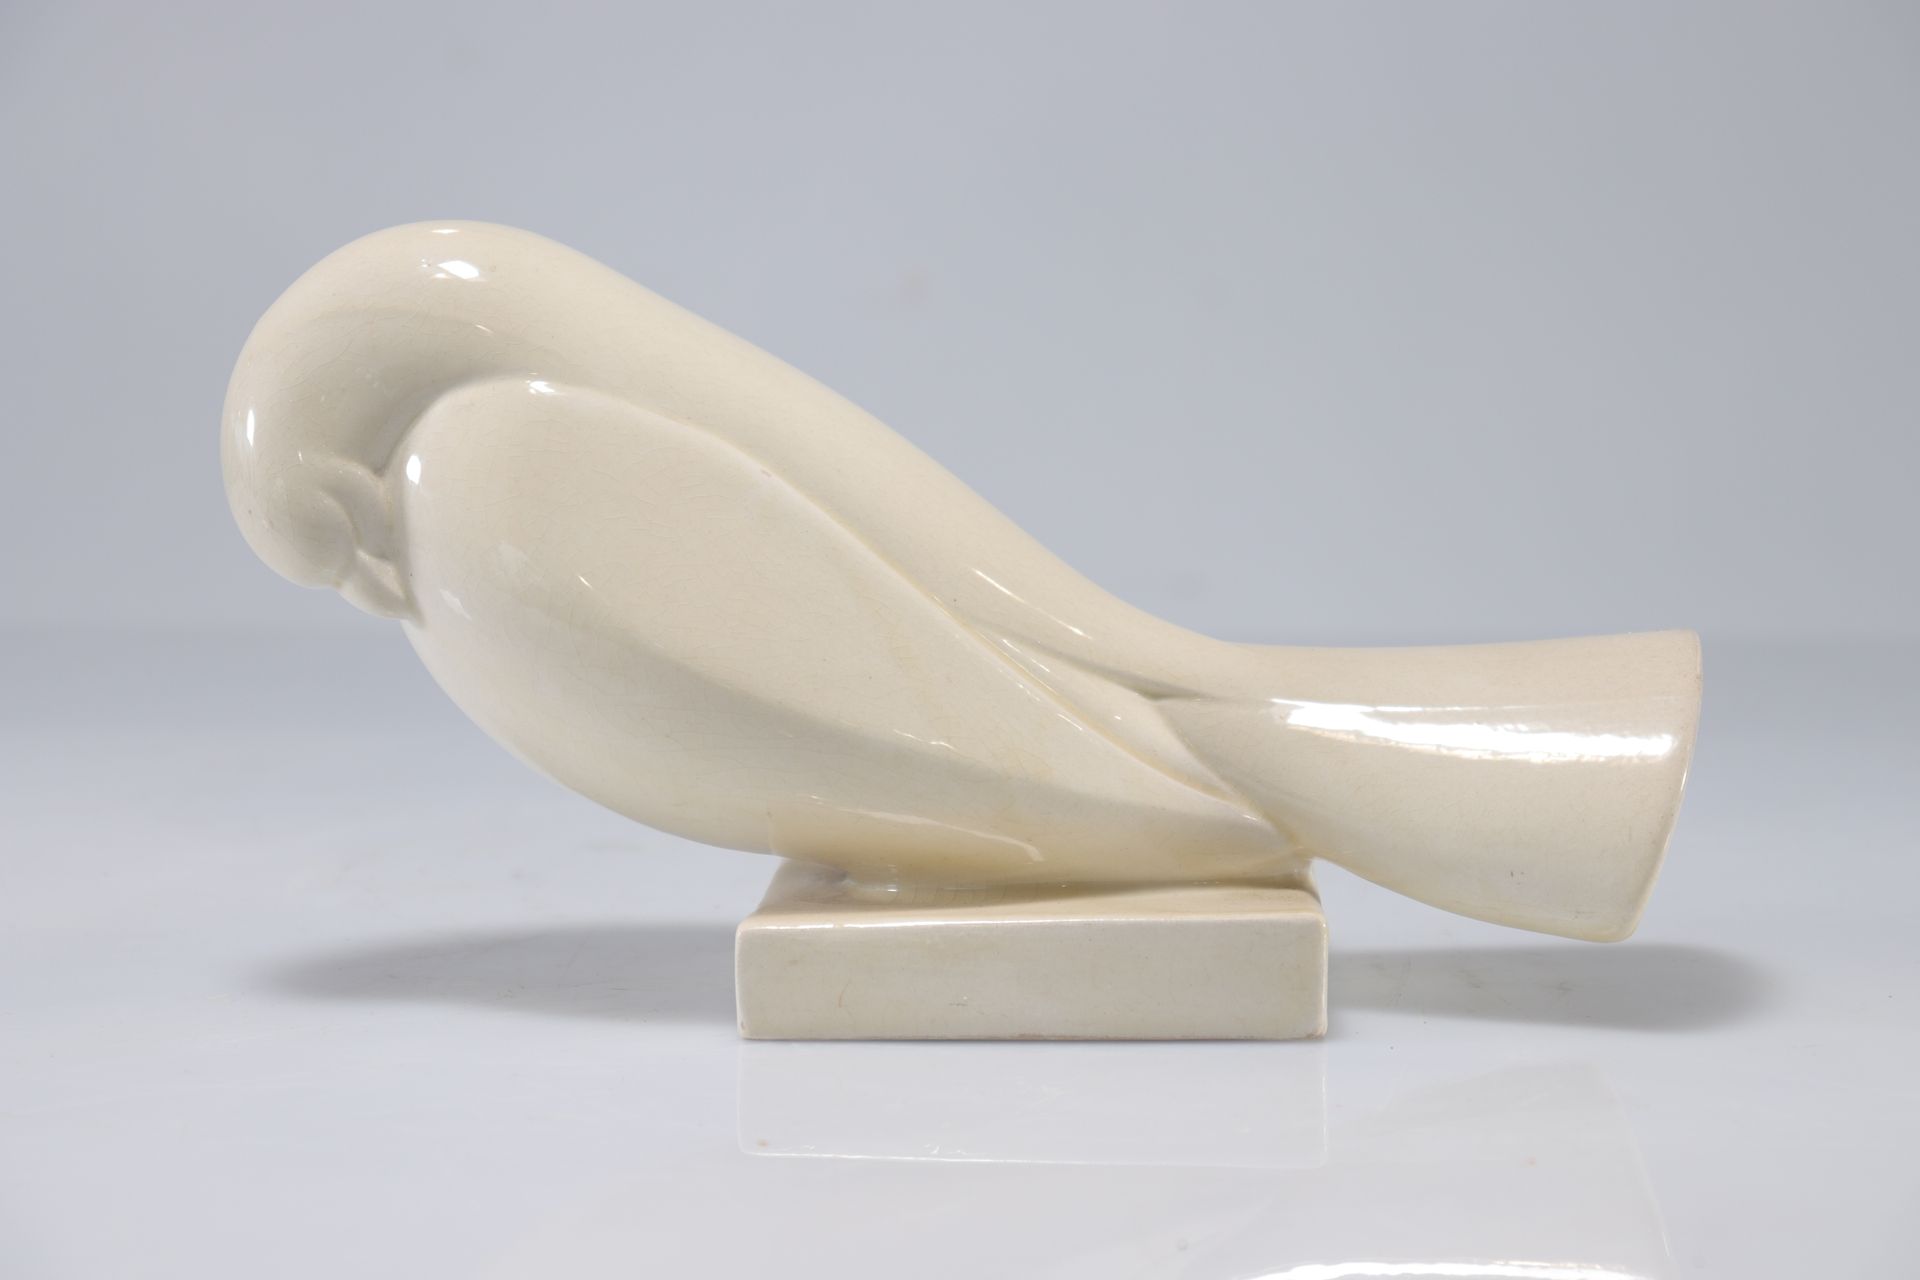 Null Jean et Jacques ADNET (1900-1984) - 裂纹象牙白陶瓷鸽子。
重量: 580克
地区: 法国
尺寸: 长265毫米
作&hellip;